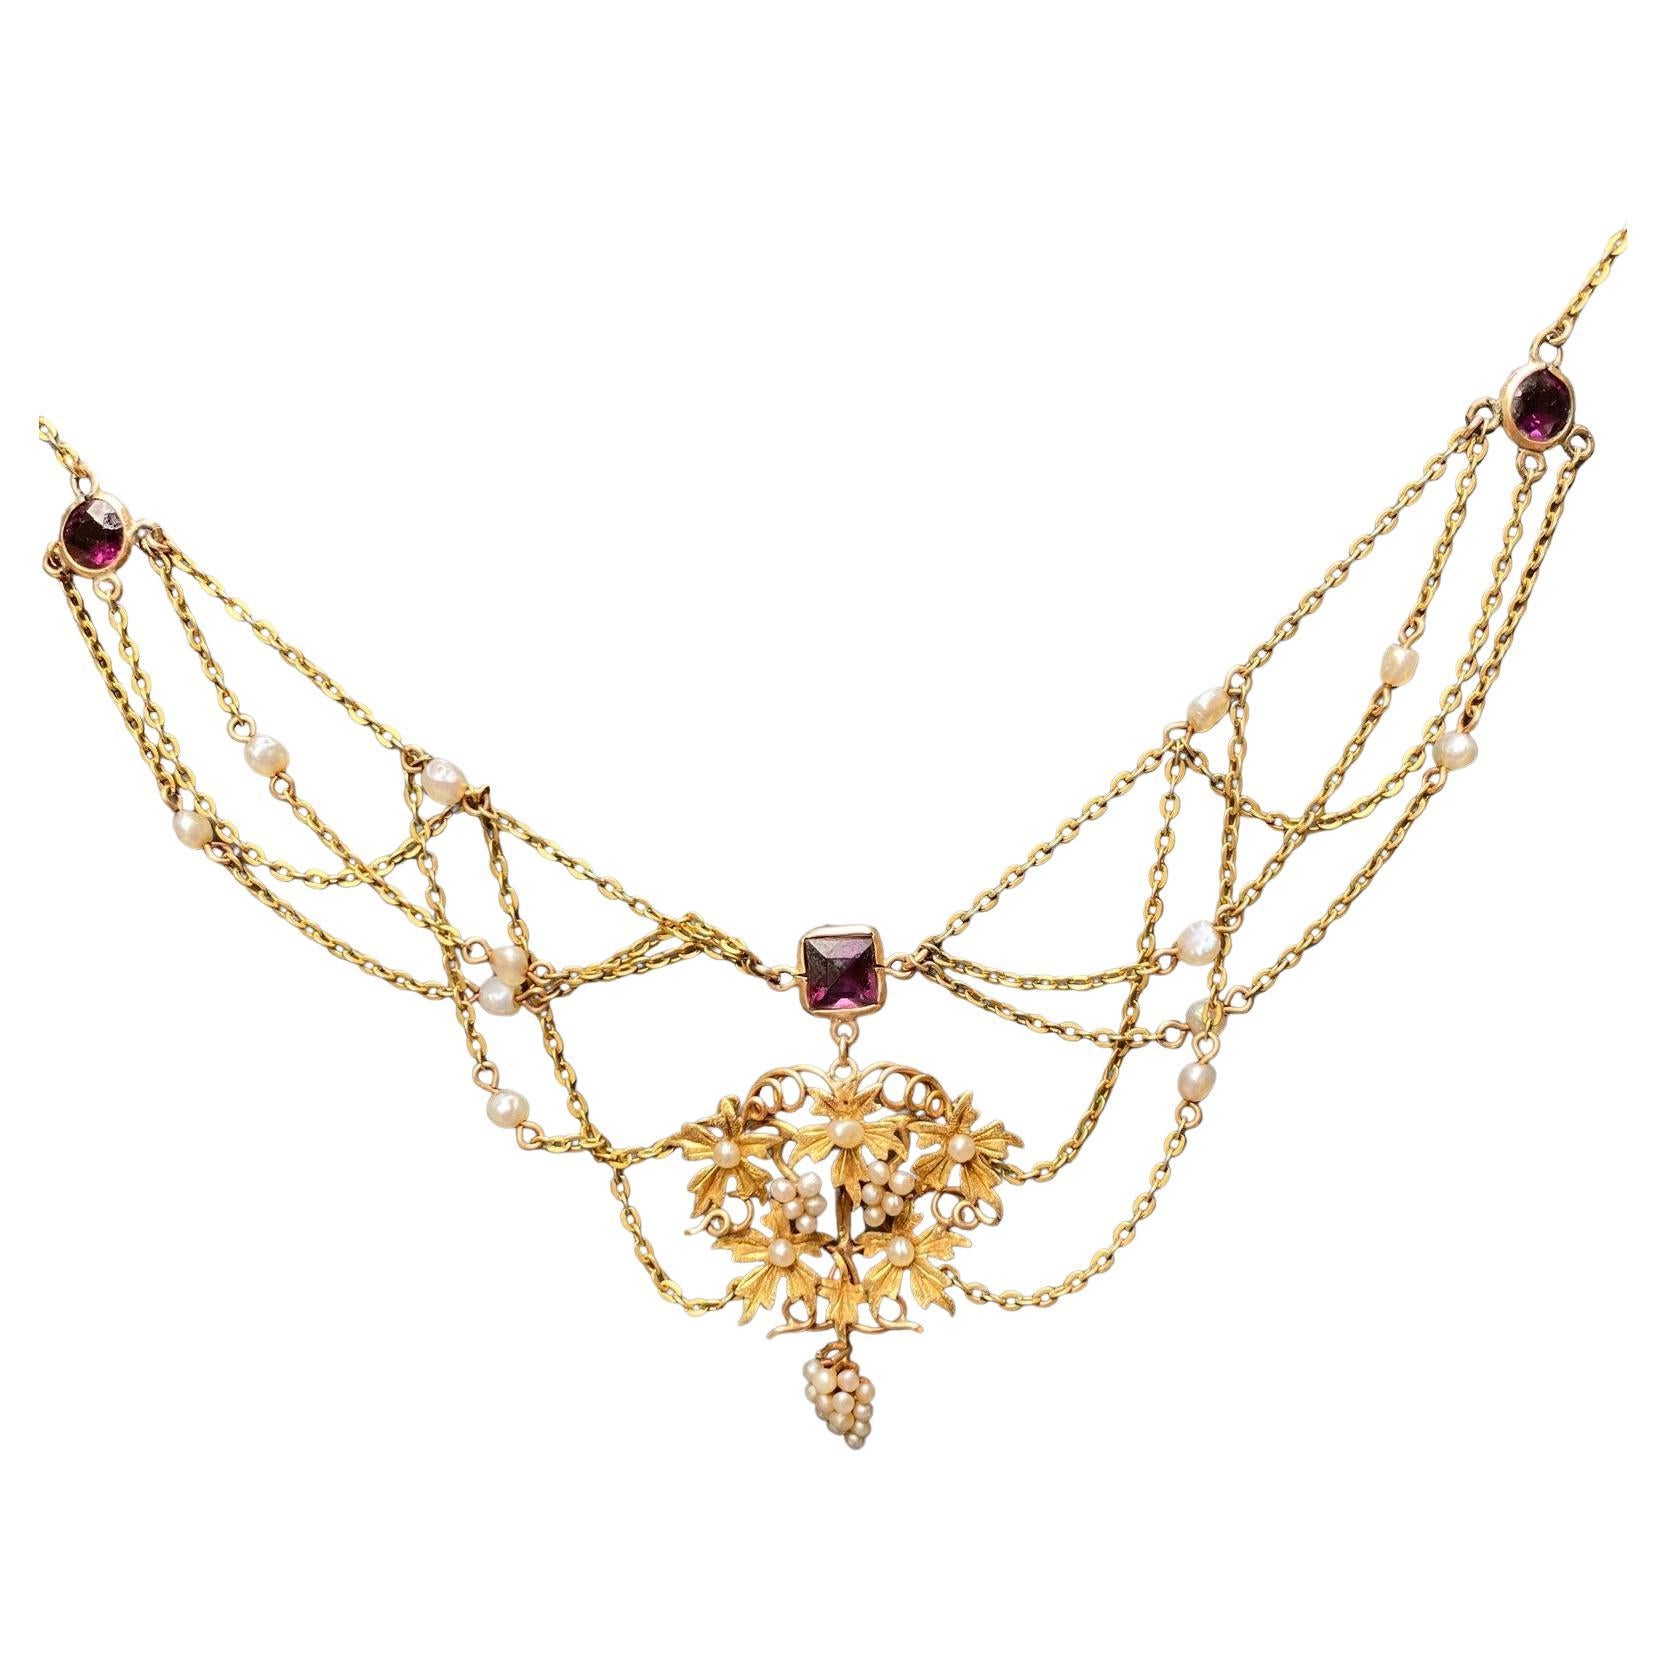 Collier feston Art nouveau en or, améthyste et perles naturelles